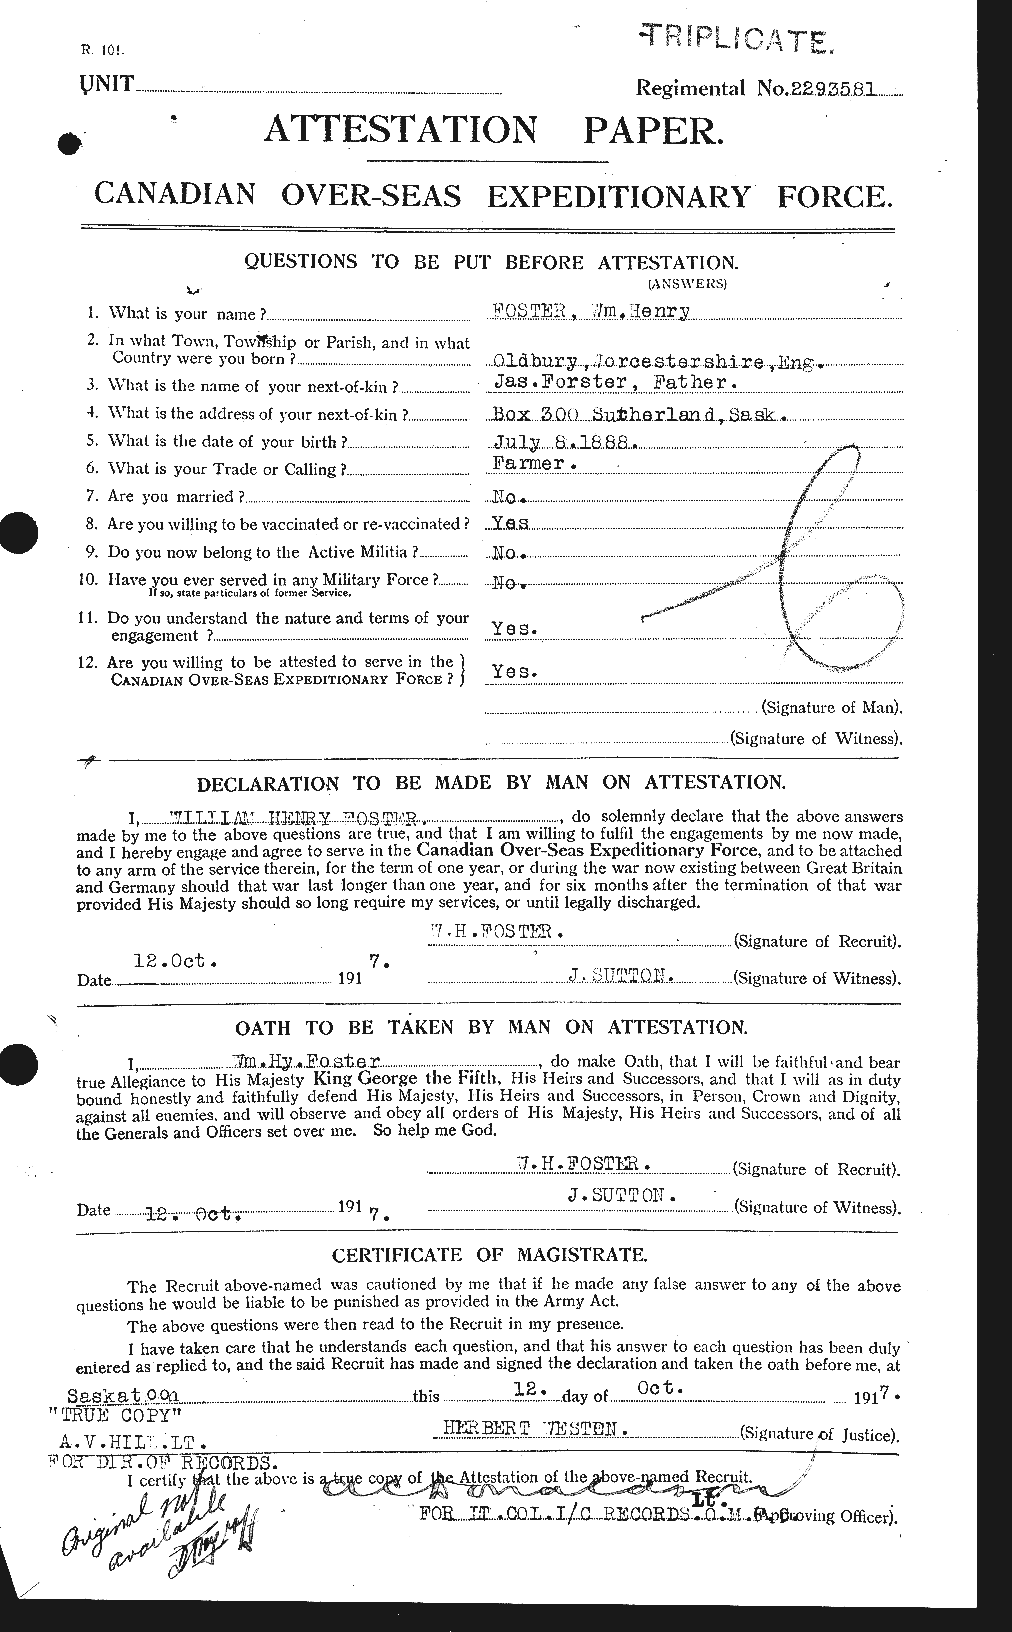 Dossiers du Personnel de la Première Guerre mondiale - CEC 328751a